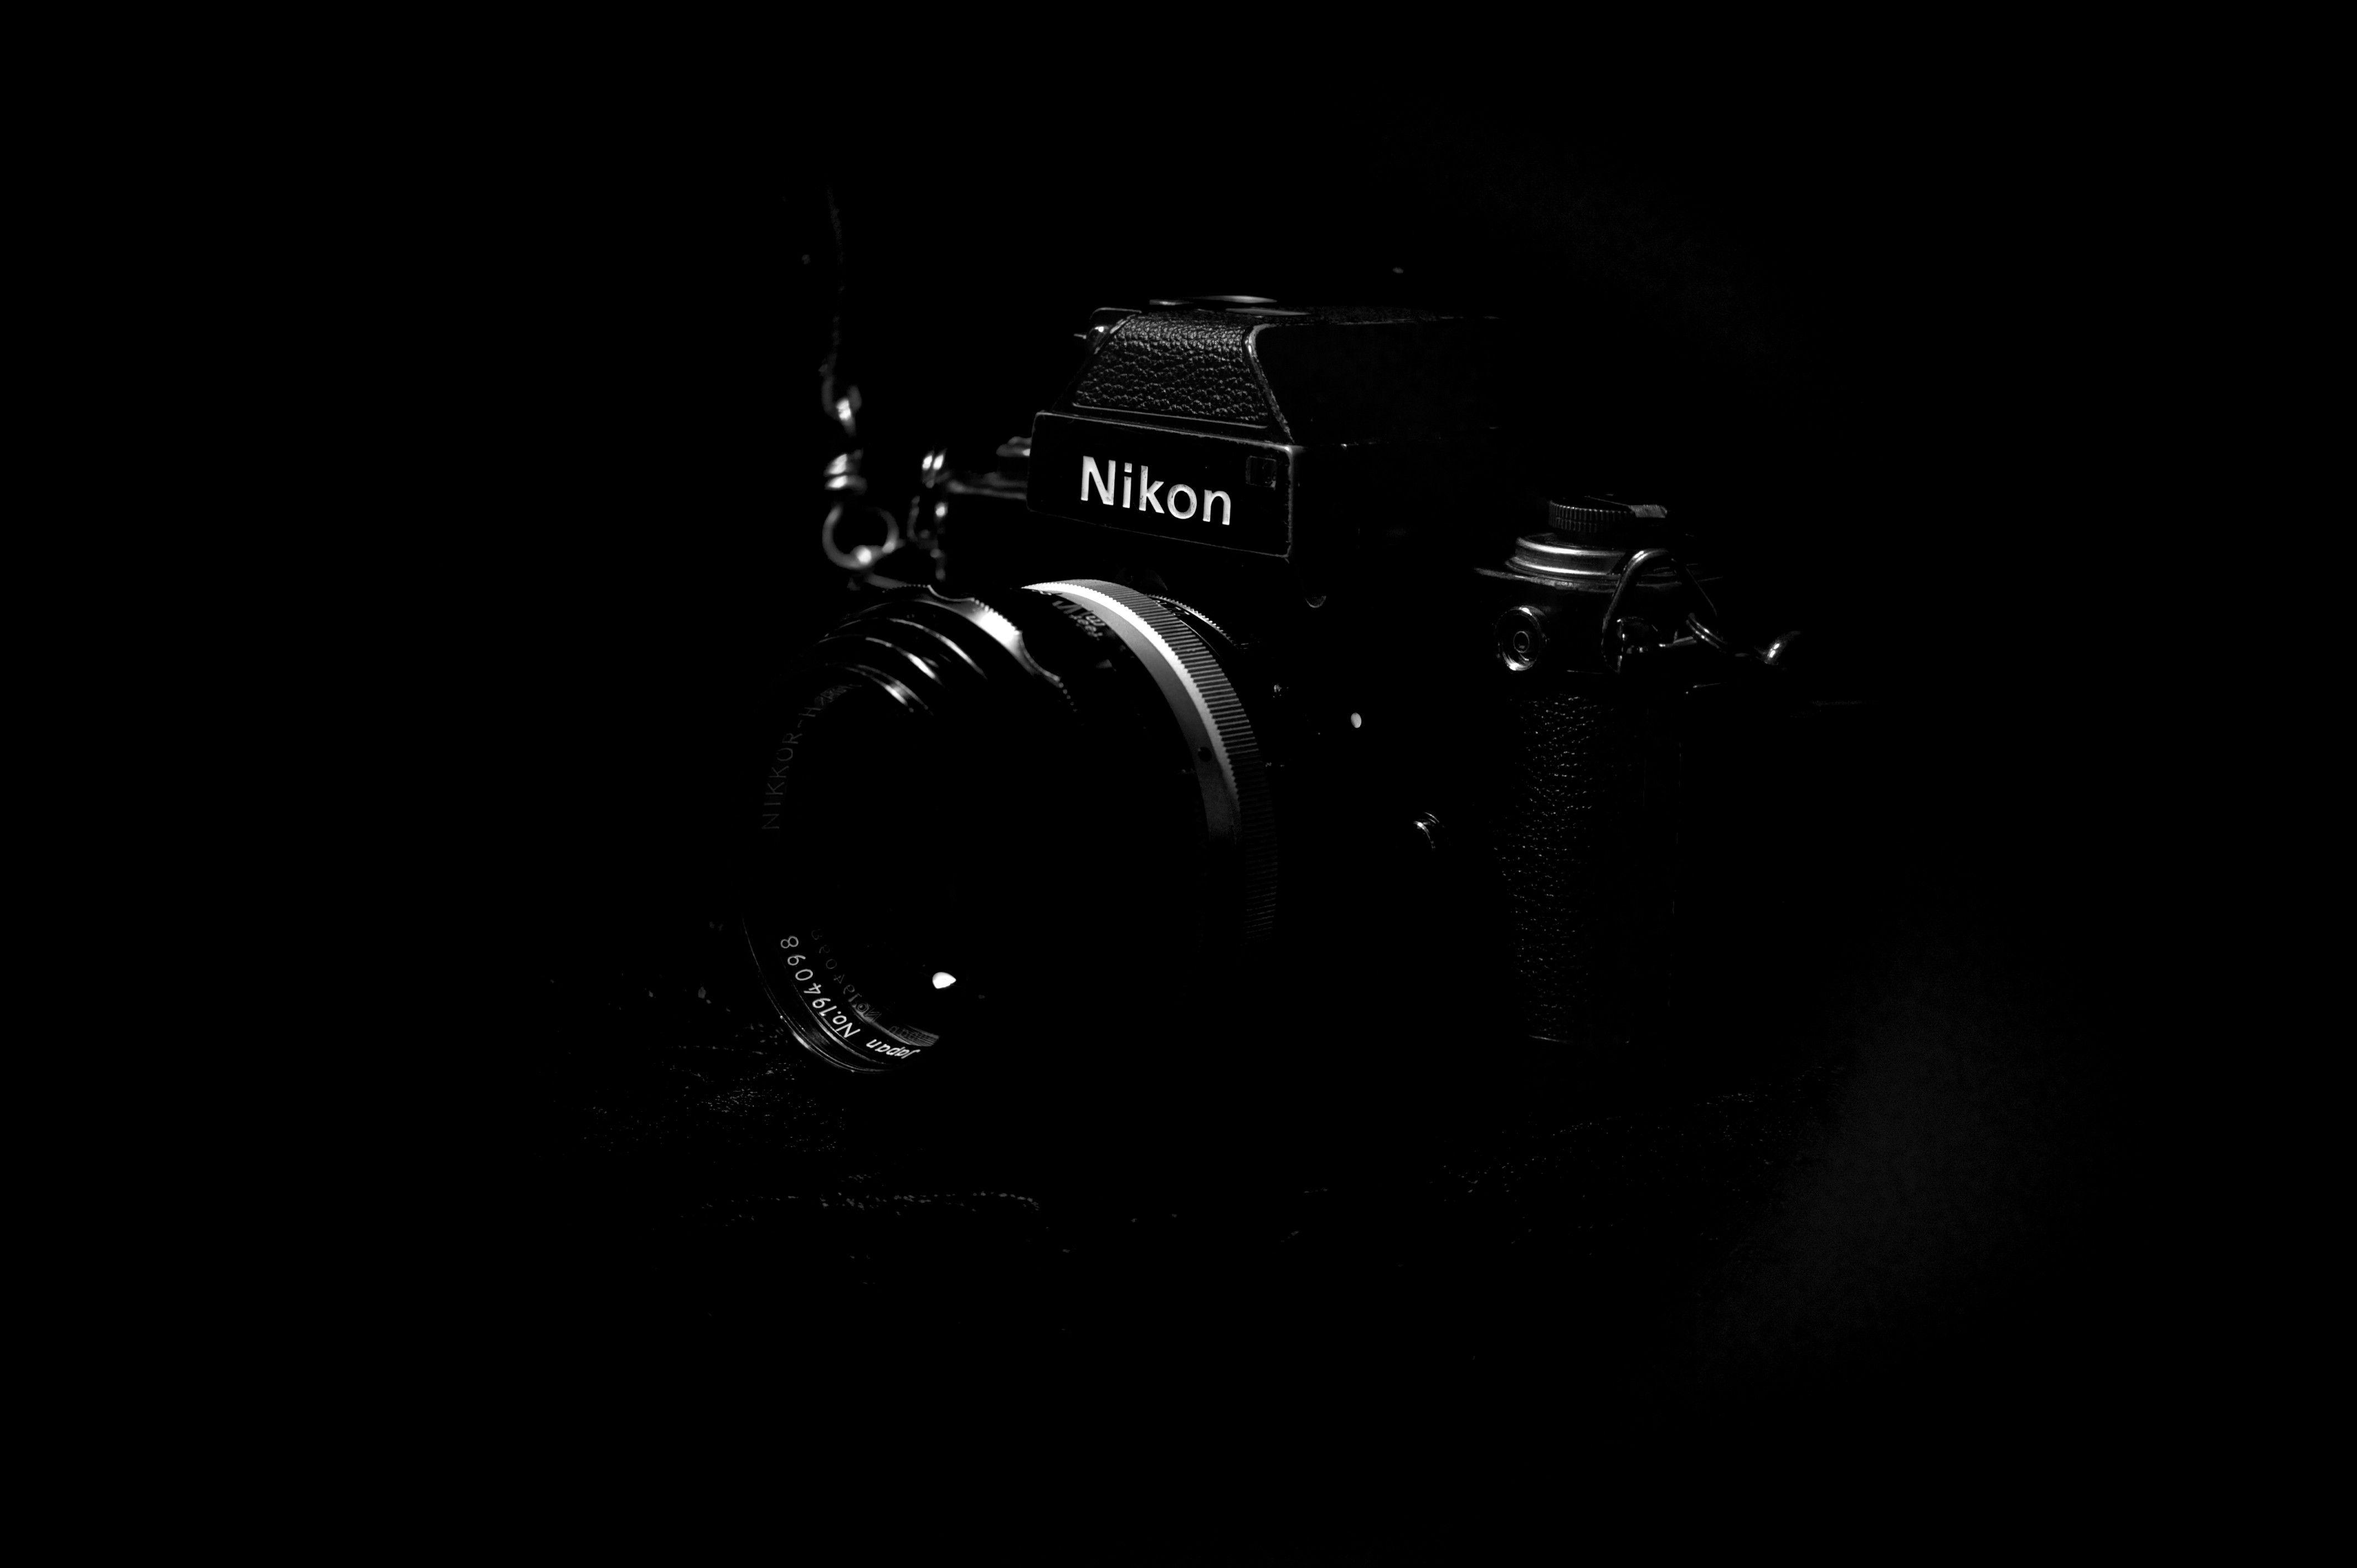 Máy ảnh thẩm mỹ đen - Nếu bạn đang tìm kiếm một chiếc máy ảnh độc đáo để sáng tạo và ghi lại những khoảnh khắc tuyệt đẹp trong cuộc sống, hãy tham khảo hình ảnh của máy ảnh thẩm mỹ đen. Được trang bị bởi nhiều tính năng hiện đại, máy ảnh sẽ giúp bạn chụp những bức ảnh đẹp và độc đáo hơn.